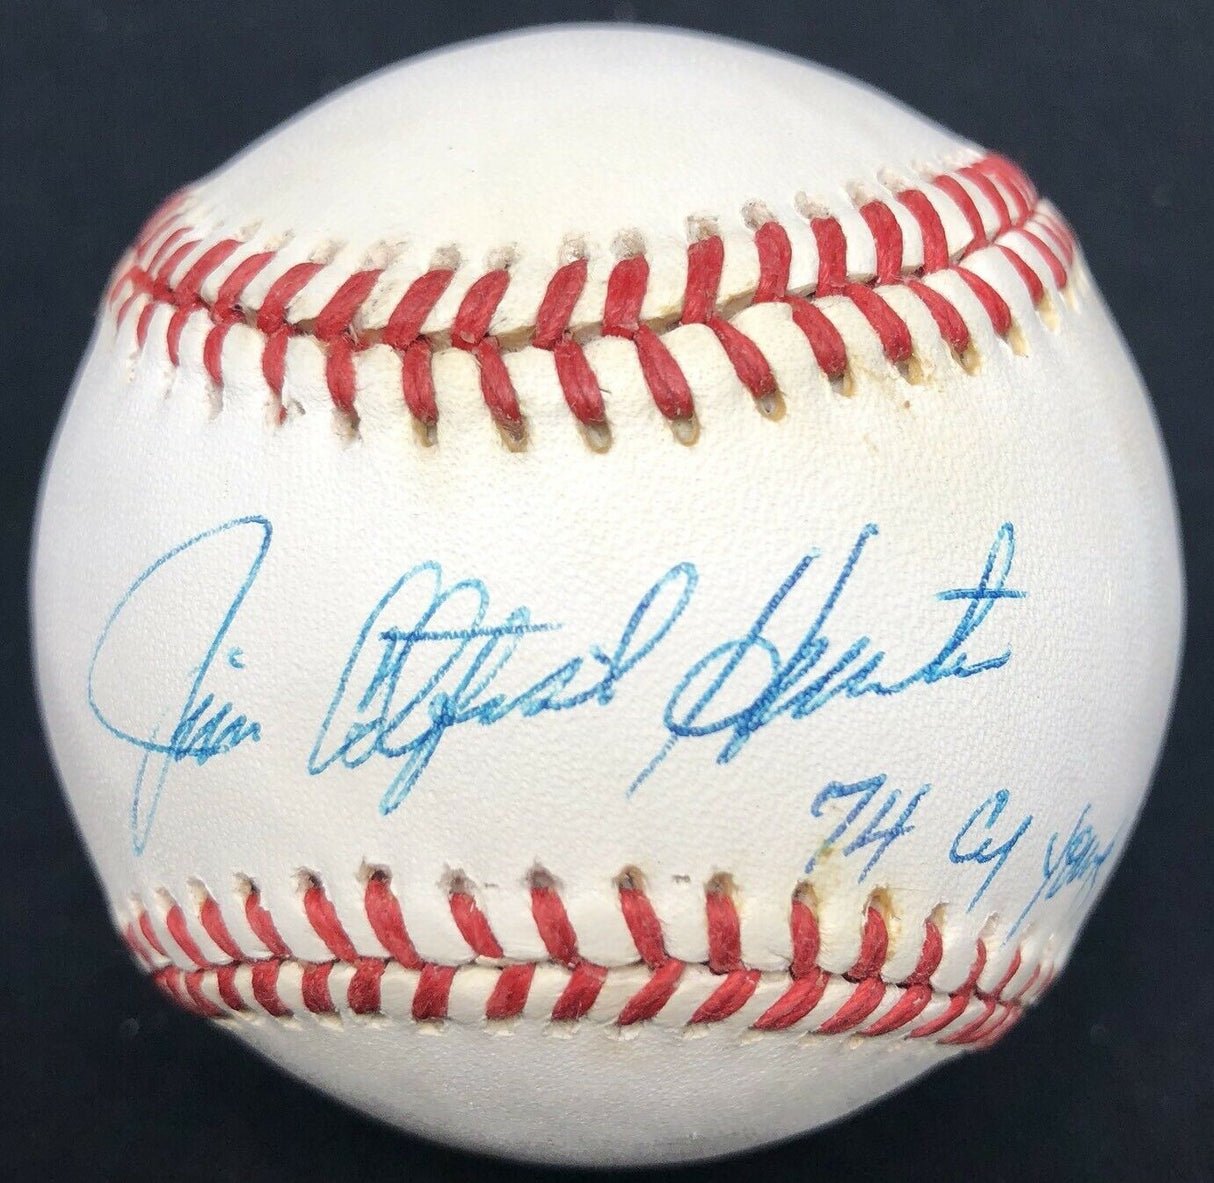 Jim Catfish Hunter Cy Young 1974 Signed Baseball JSA LOA